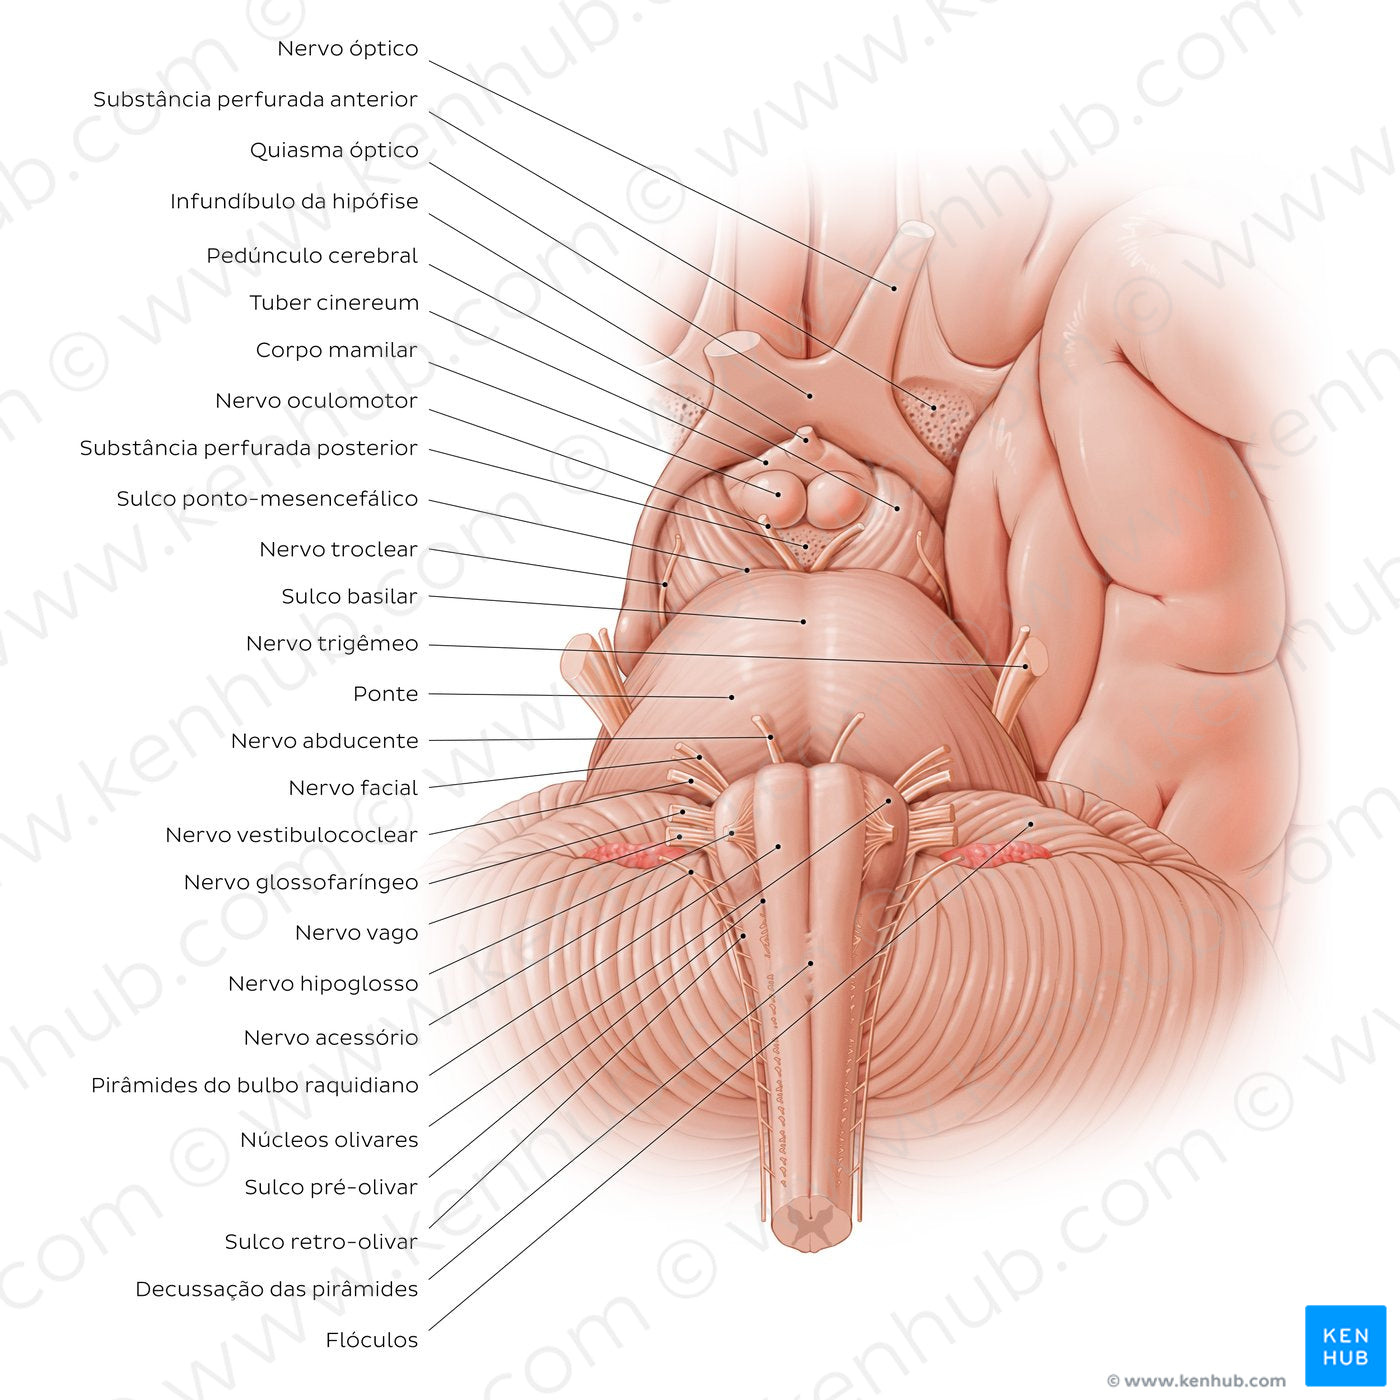 Anterior view of the brainstem (Portuguese)